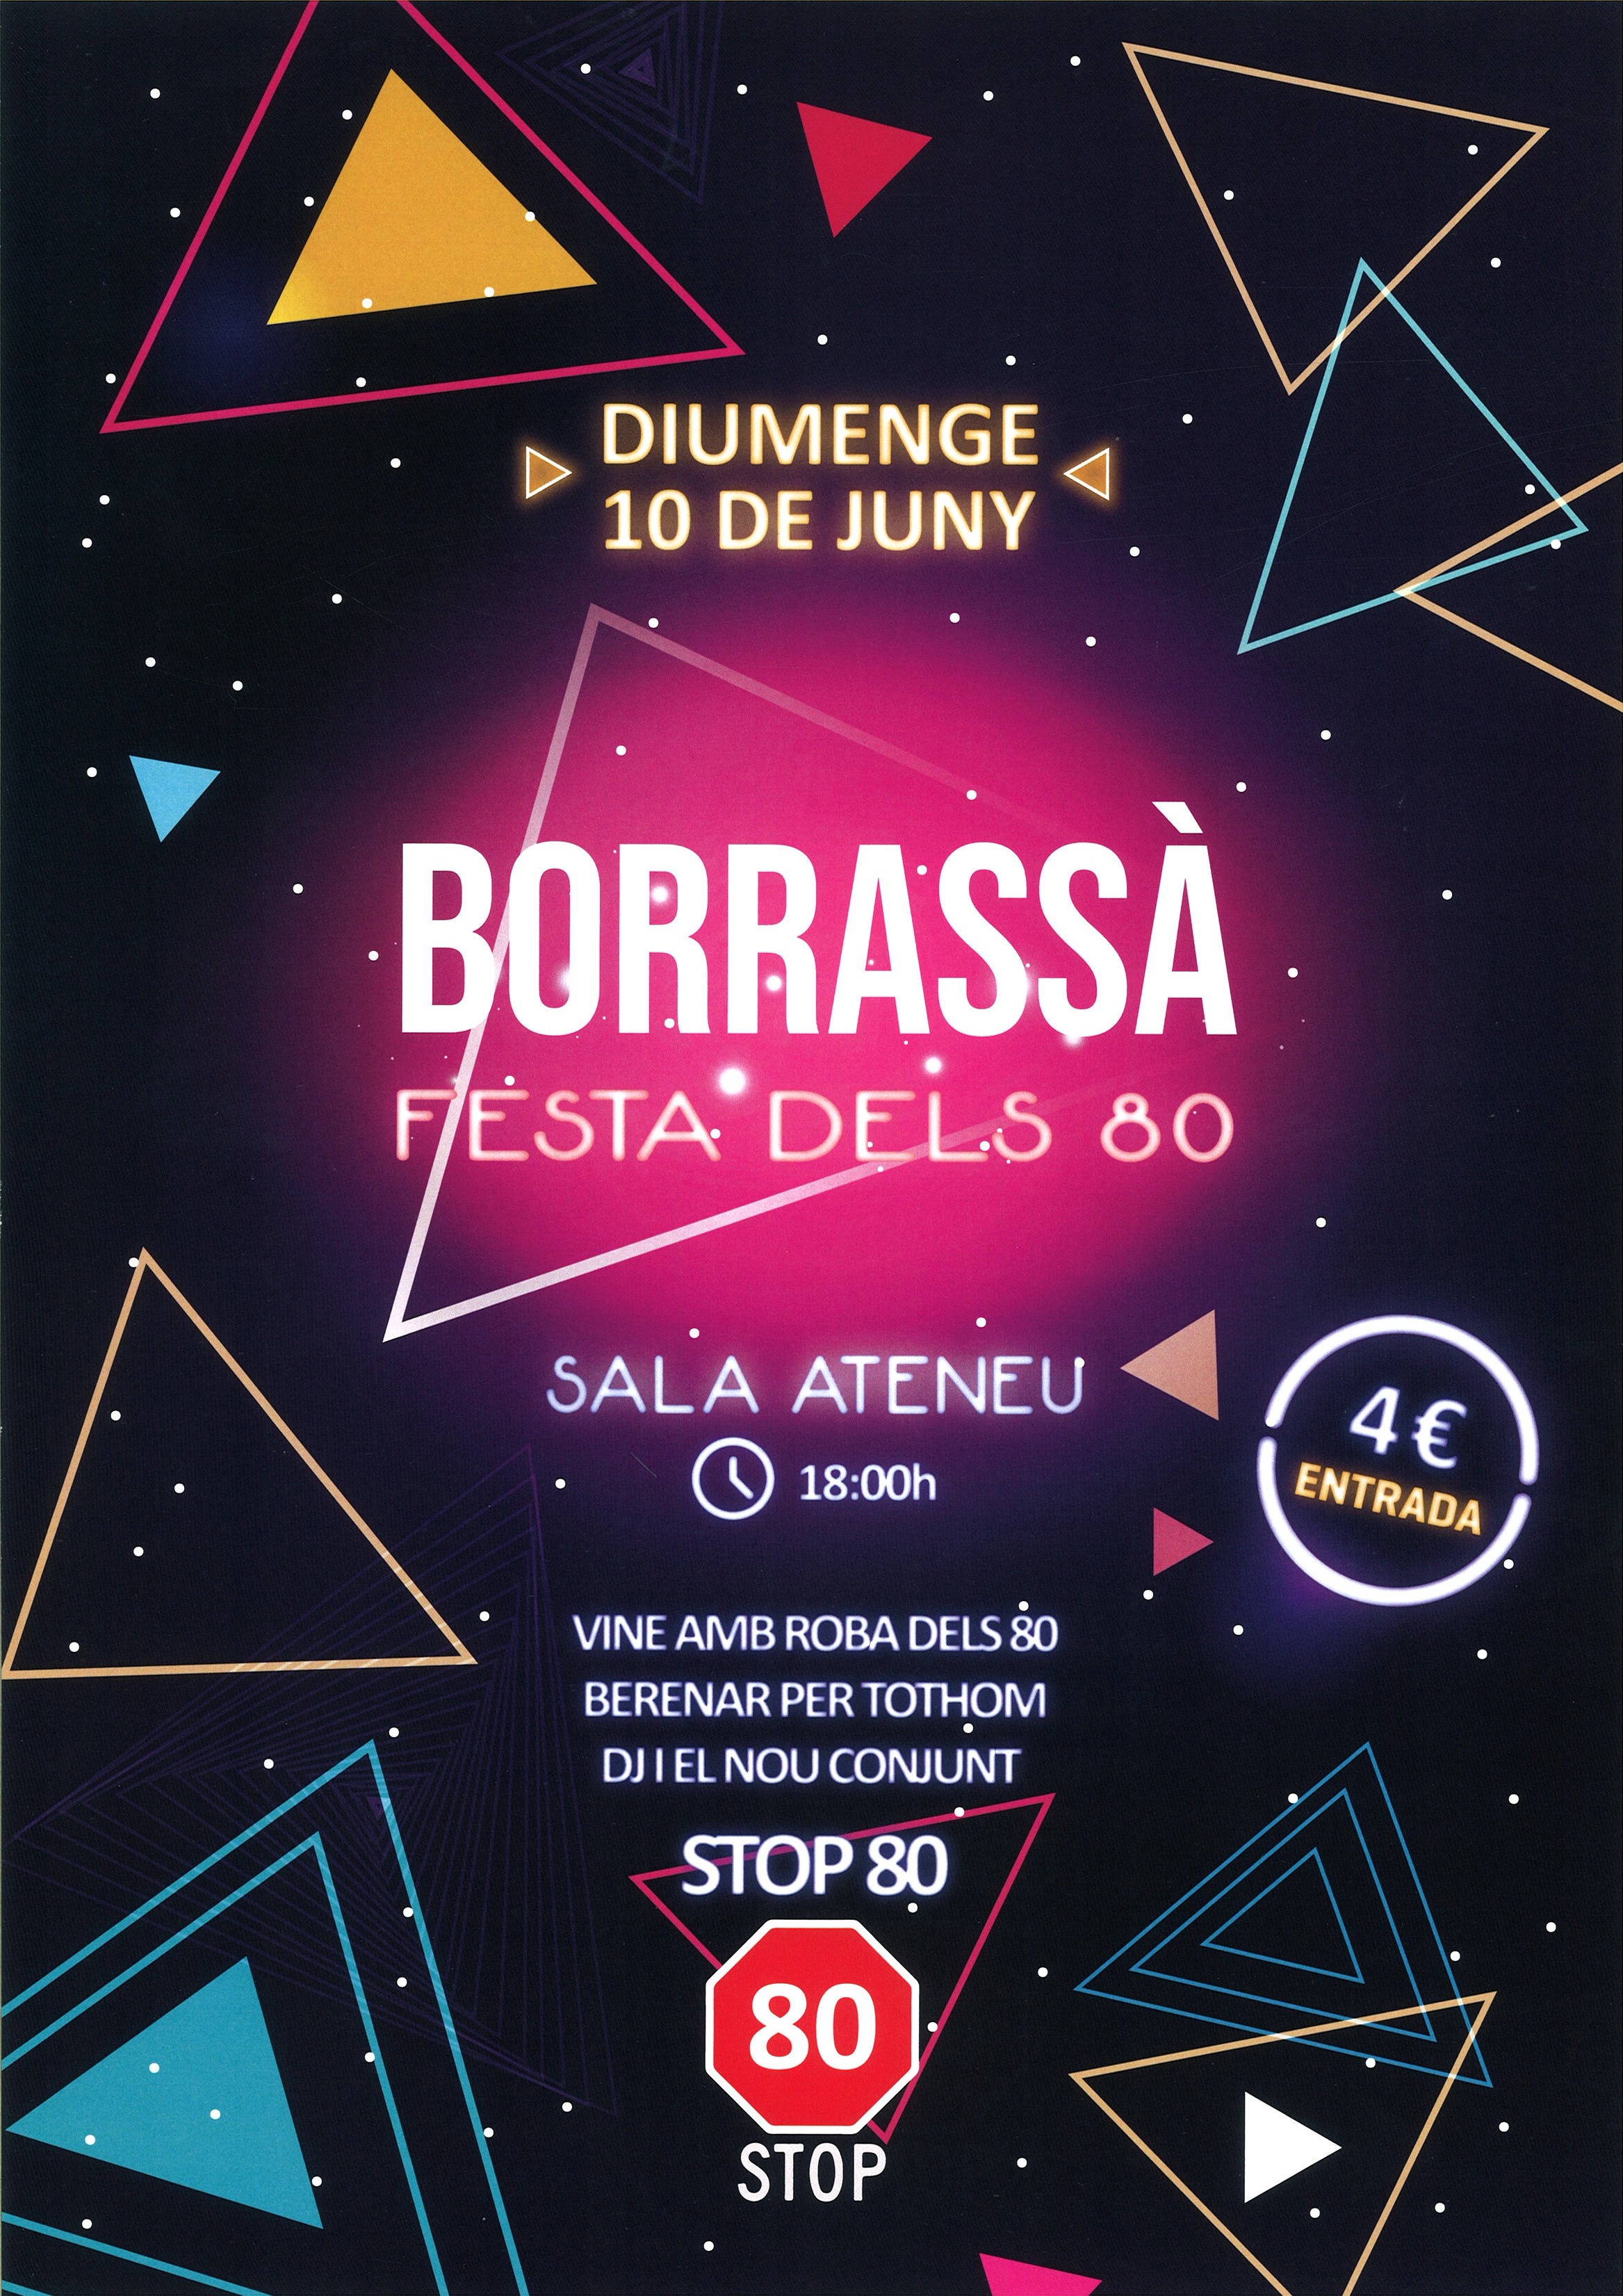 Aquest diumenge, 10 de juny, Festa dels 80 a la Sala de l'Ateneu de Borrassà amb DJ i el nou conjunt Stop 80. Organitzen Bar l'Ateneu i Imatge i so.